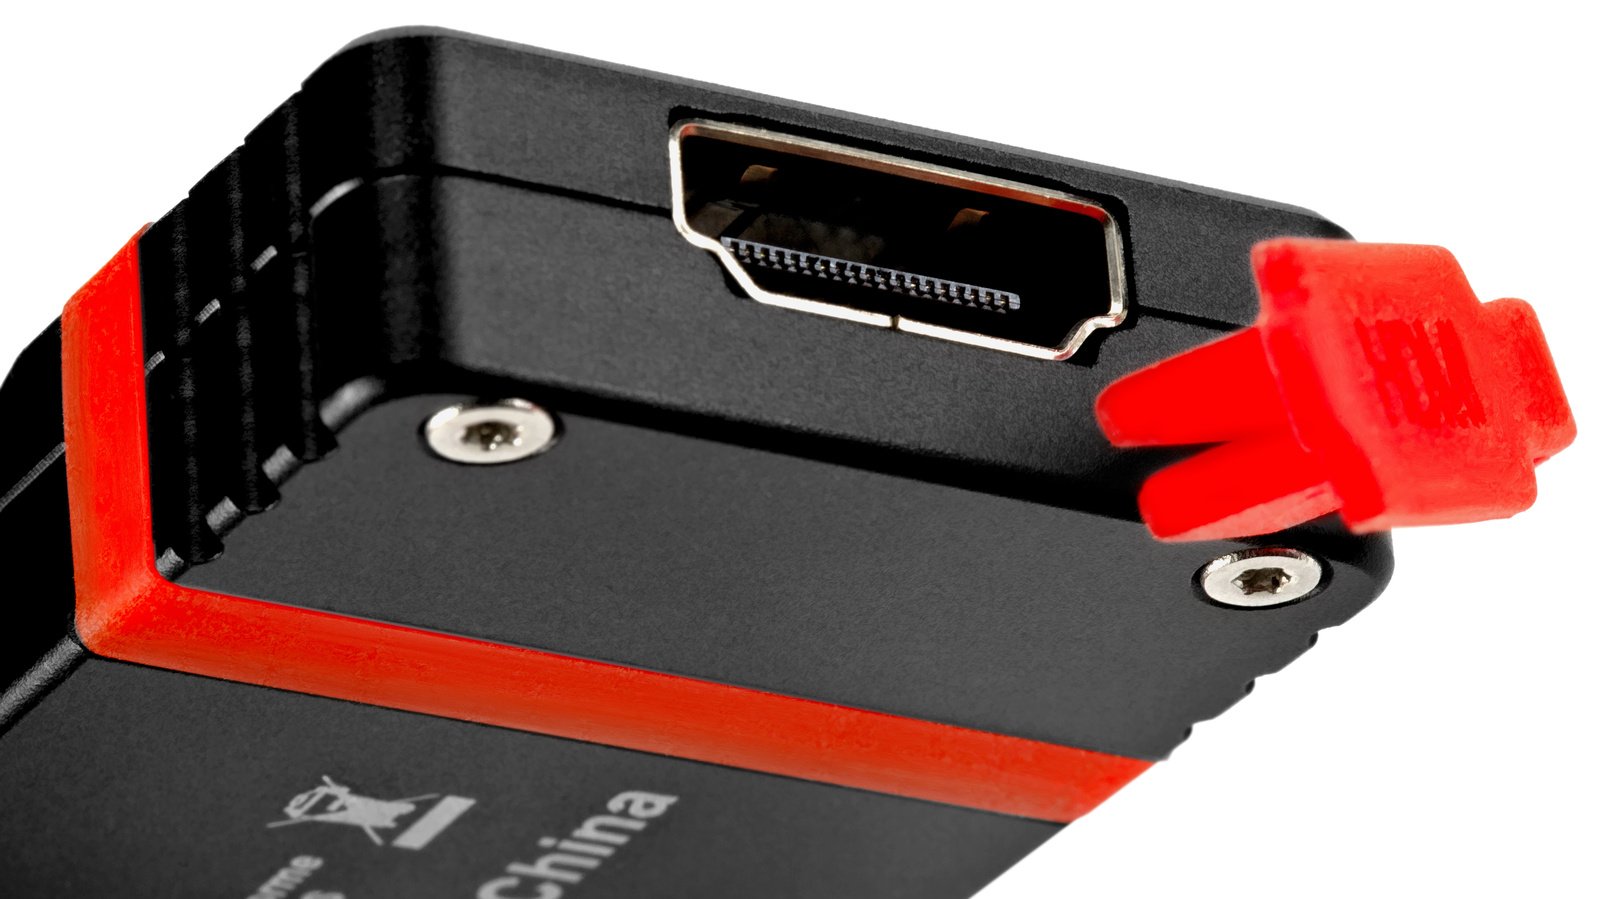 HDMI und USB sind hinter Gummiabdeckungen geschützt